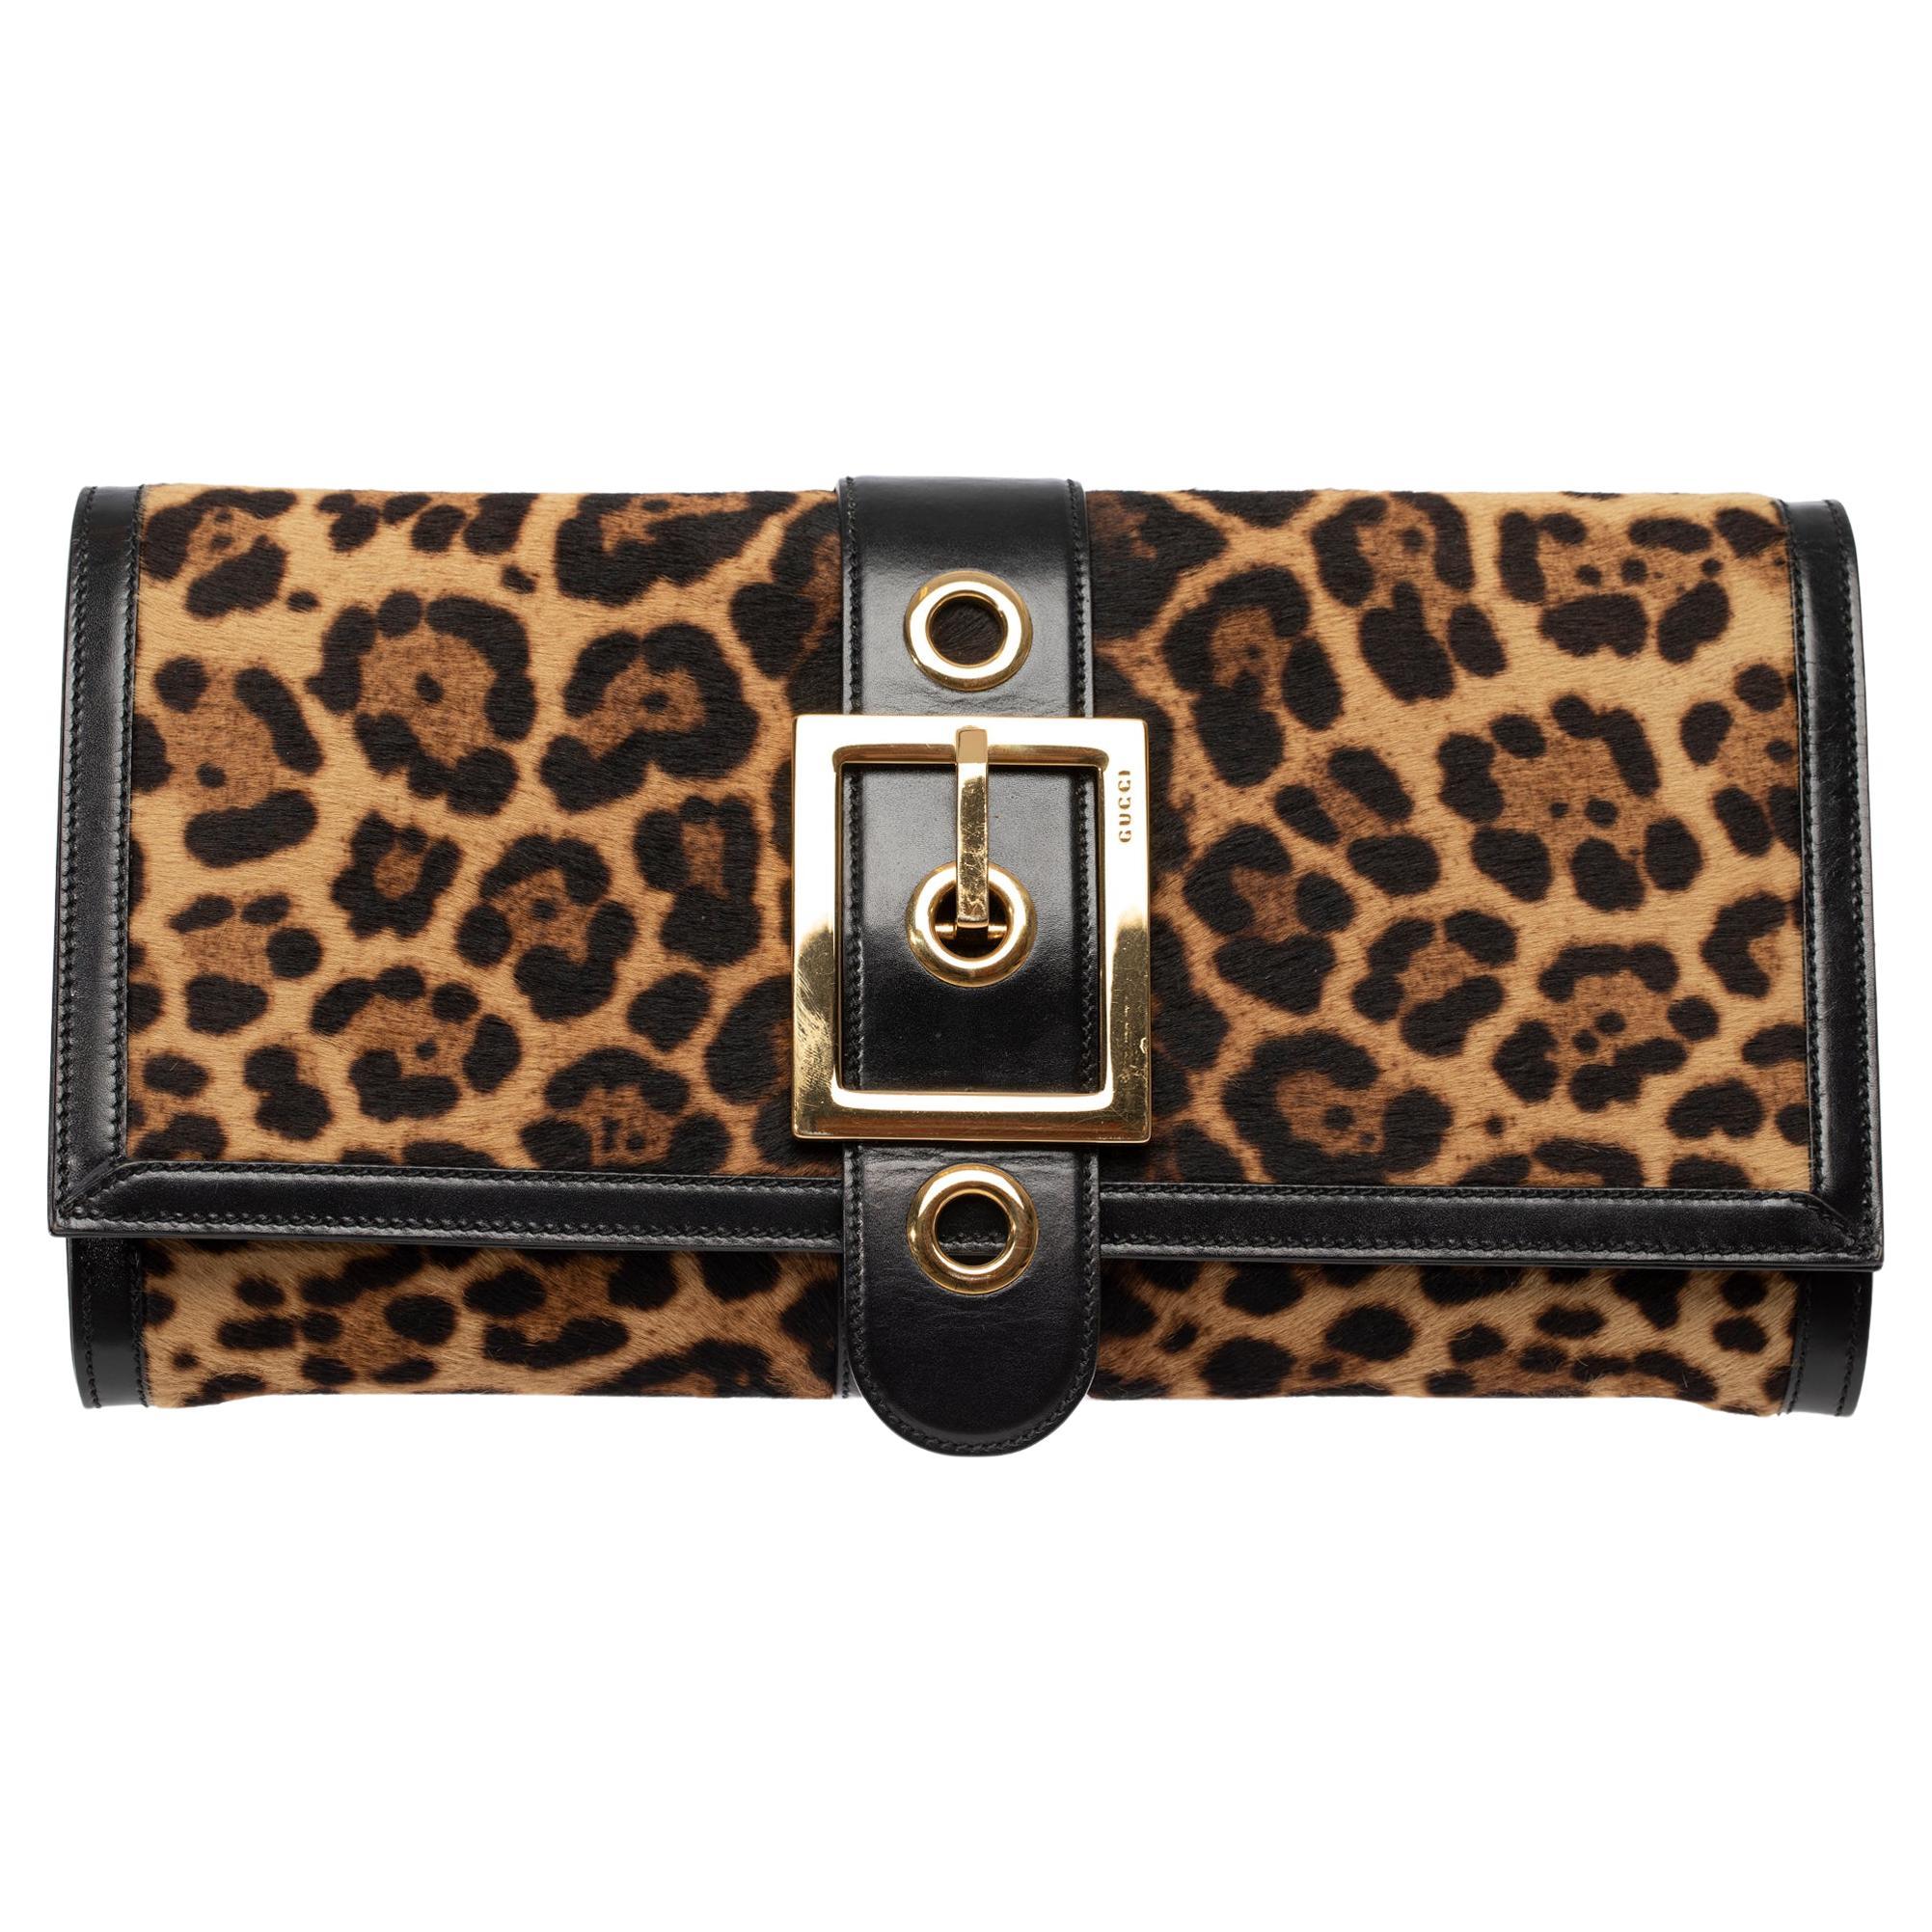 Gucci-Clutch mit Leopardenmuster und goldfarbenen Beschlägen